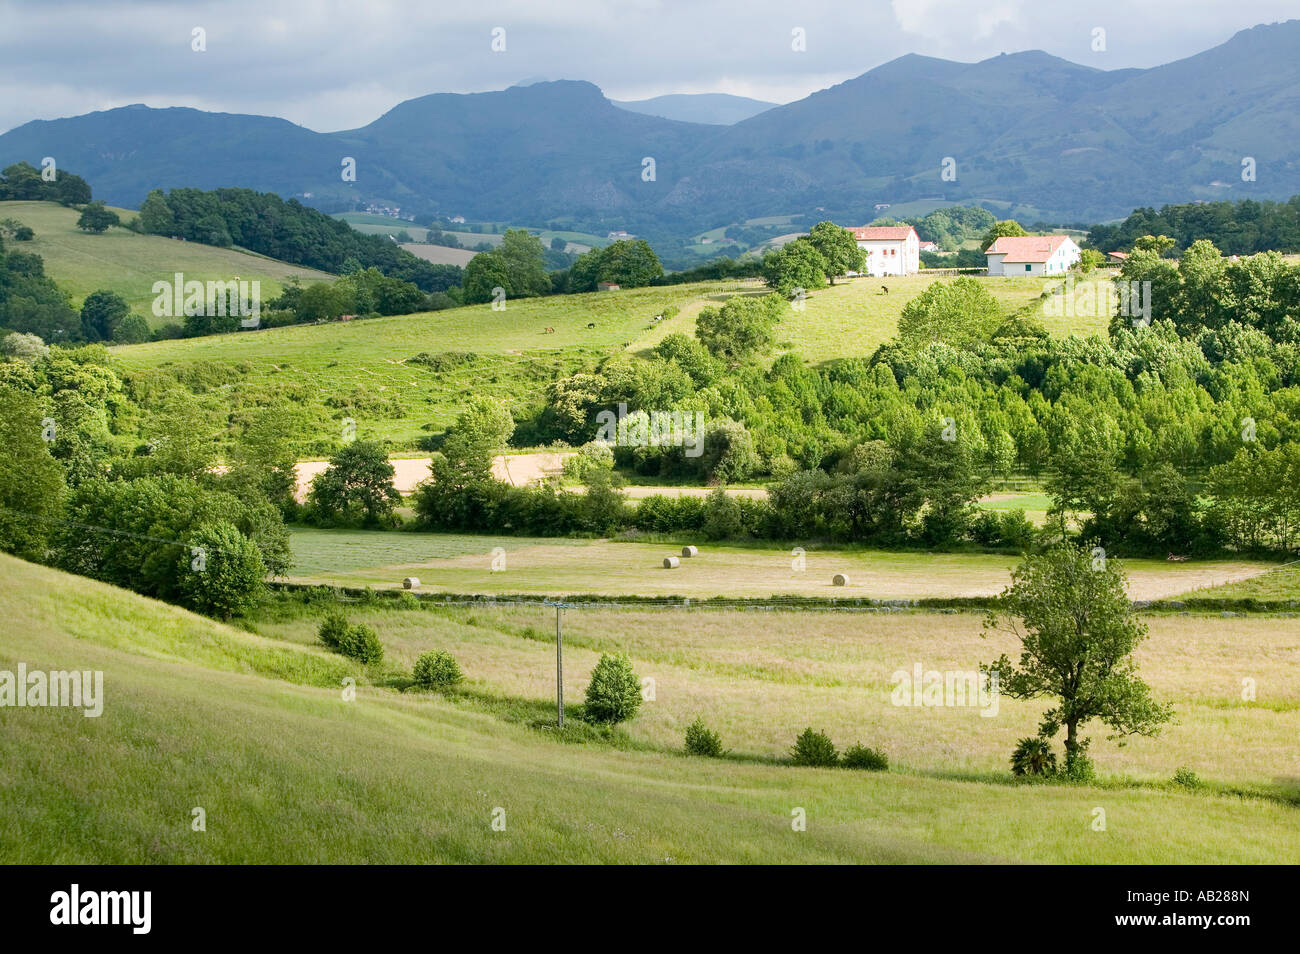 Sare France en Pays Basque espagnol sur la frontière française est une colline 17ème siècle village entouré de champs agricoles et mont R Banque D'Images